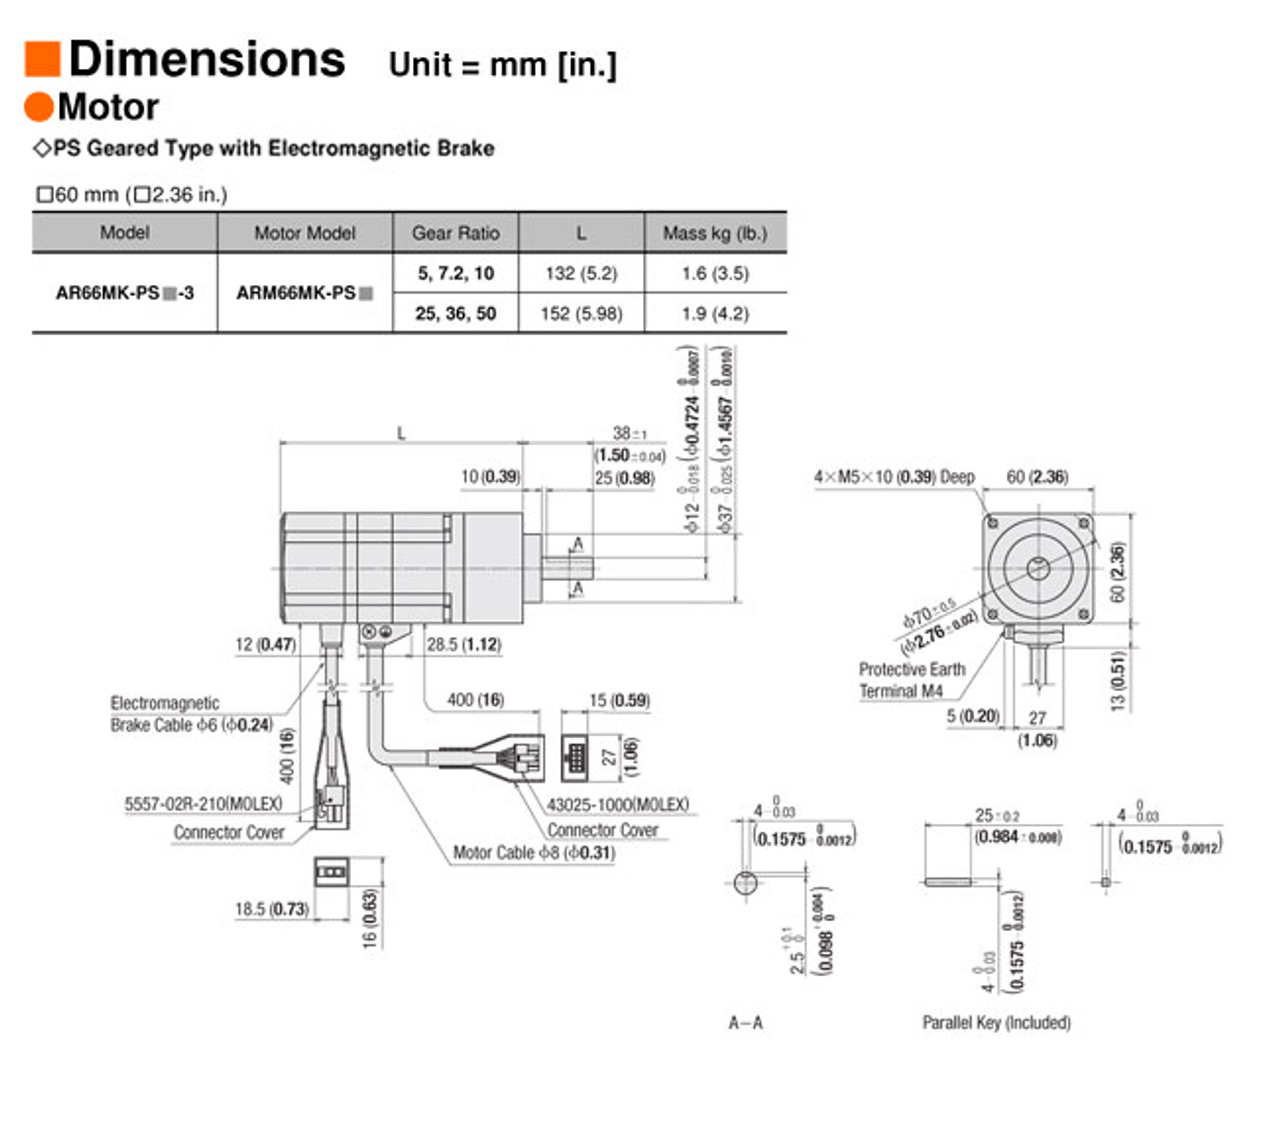 AR66MK-PS36-3 - Dimensions